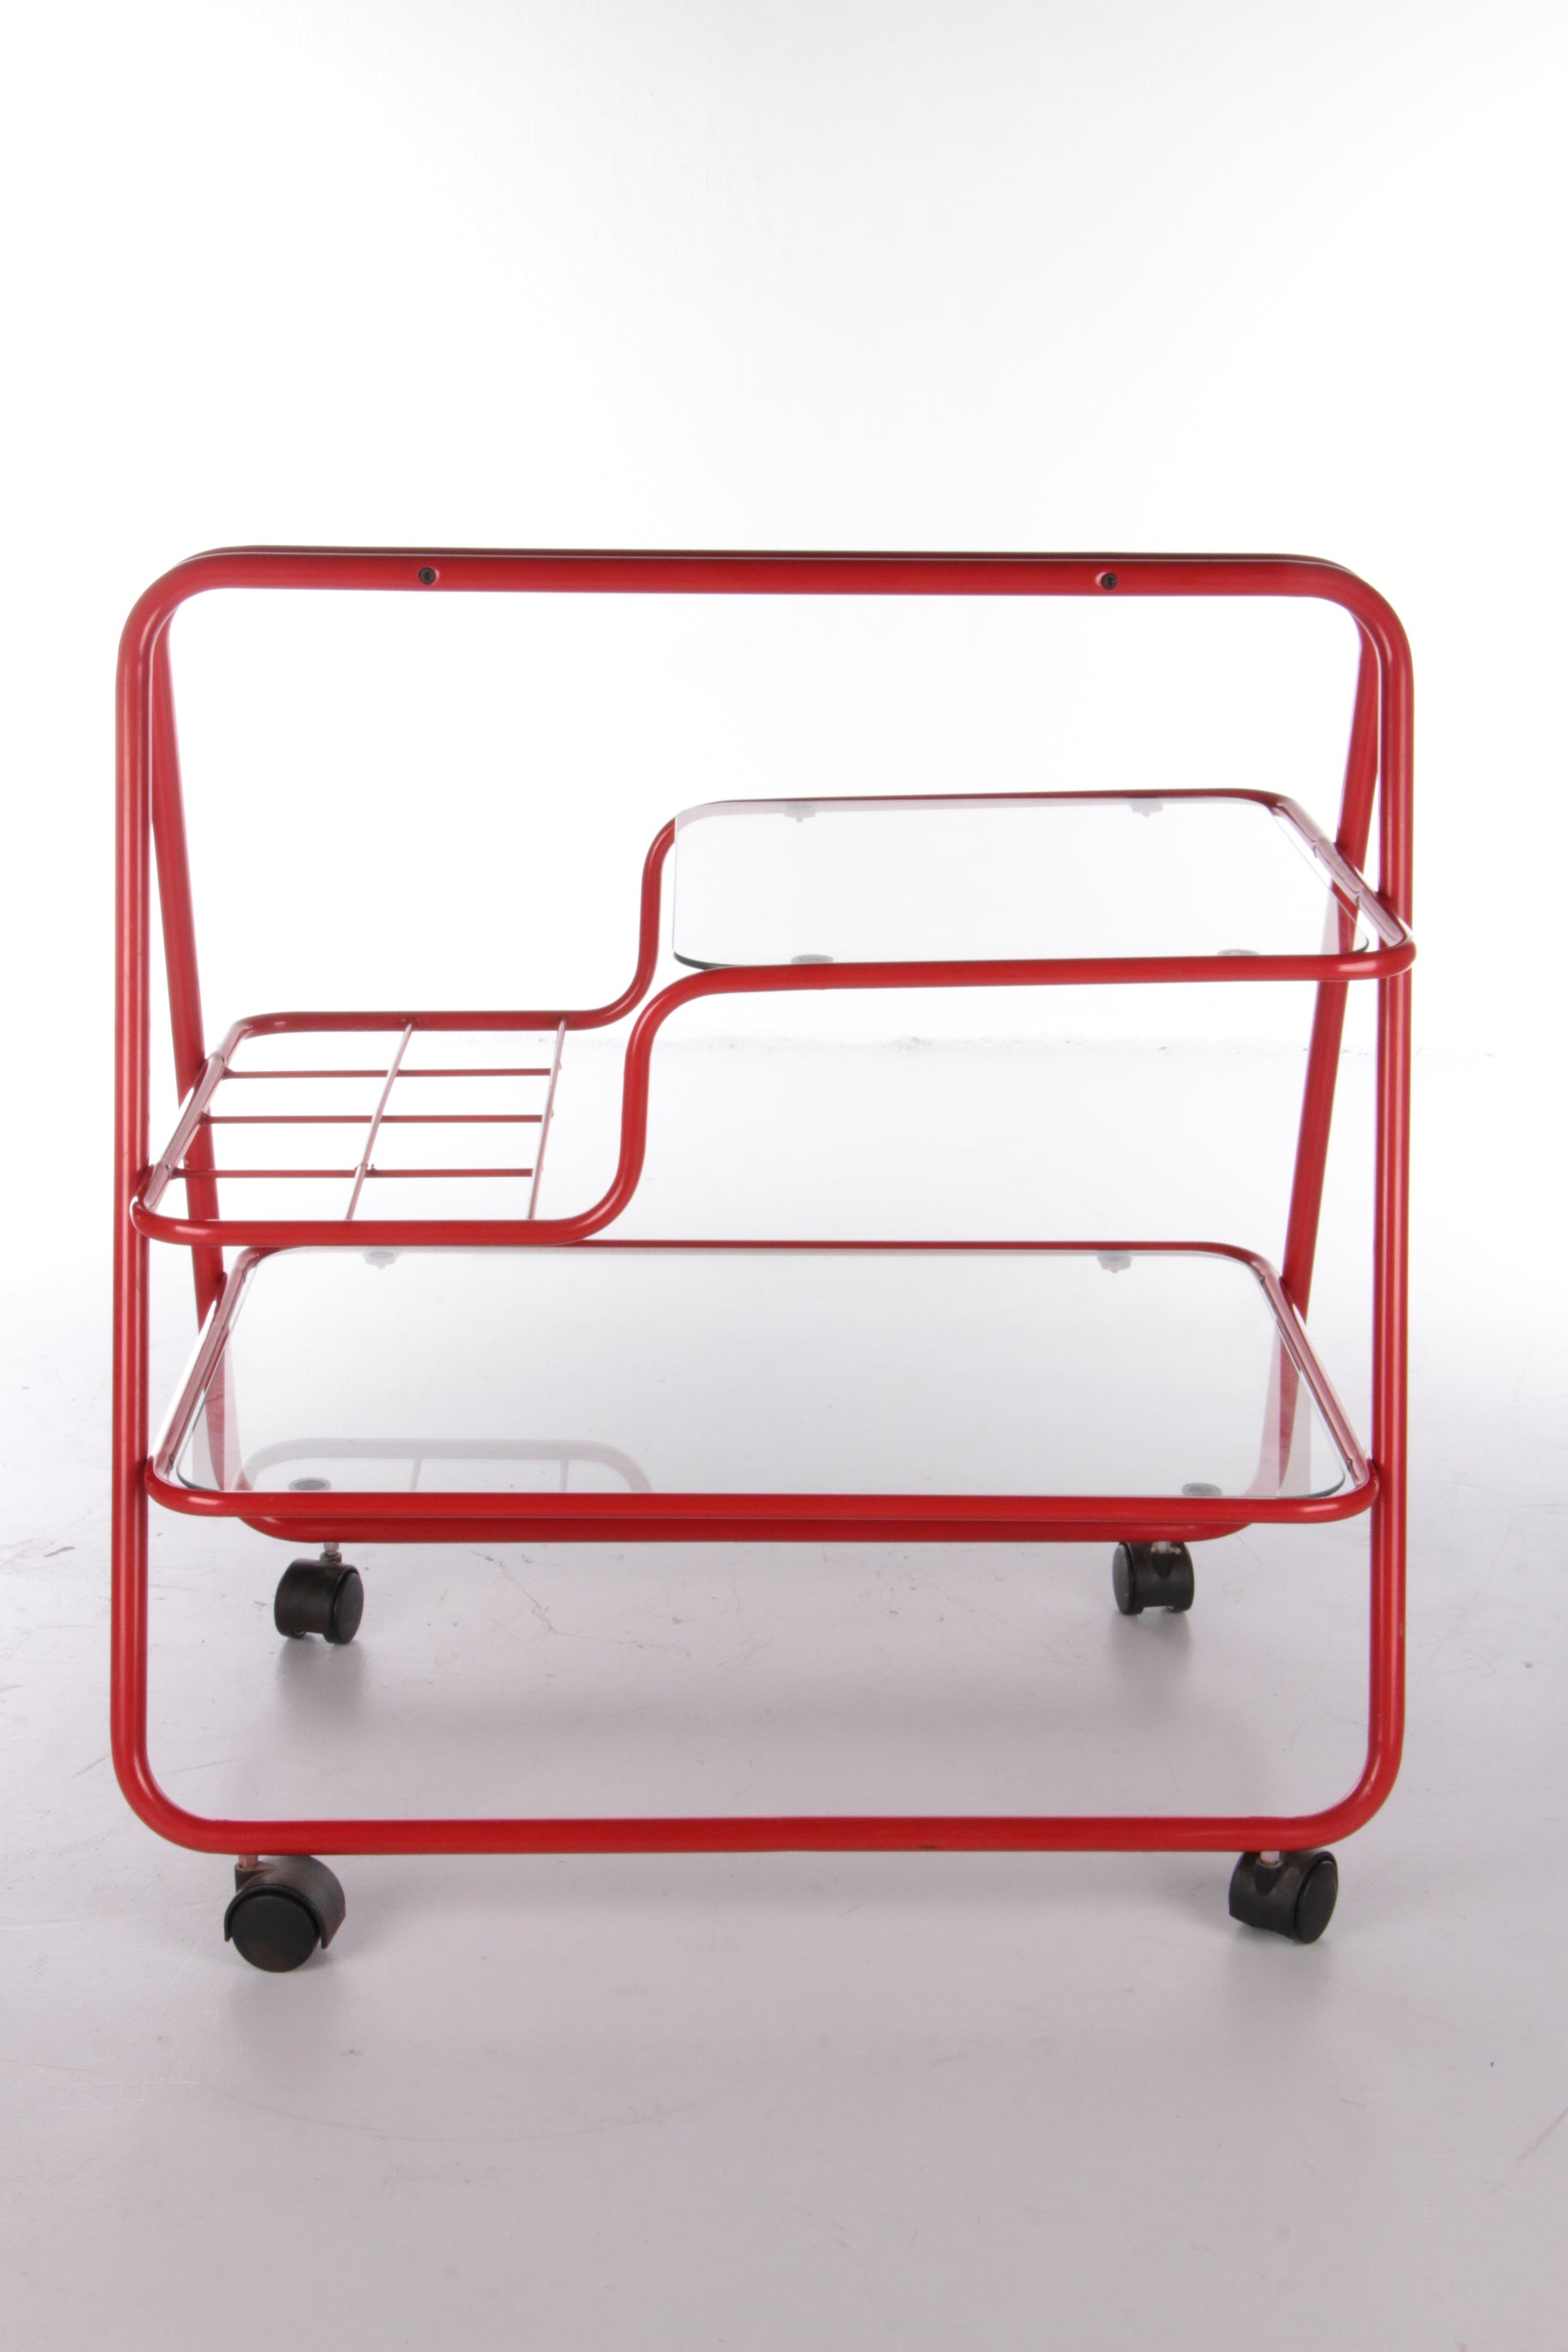 halfrond Reusachtig wees stil Vintage red metal unique Trolley or bar cart,1970s – Timeless-Art